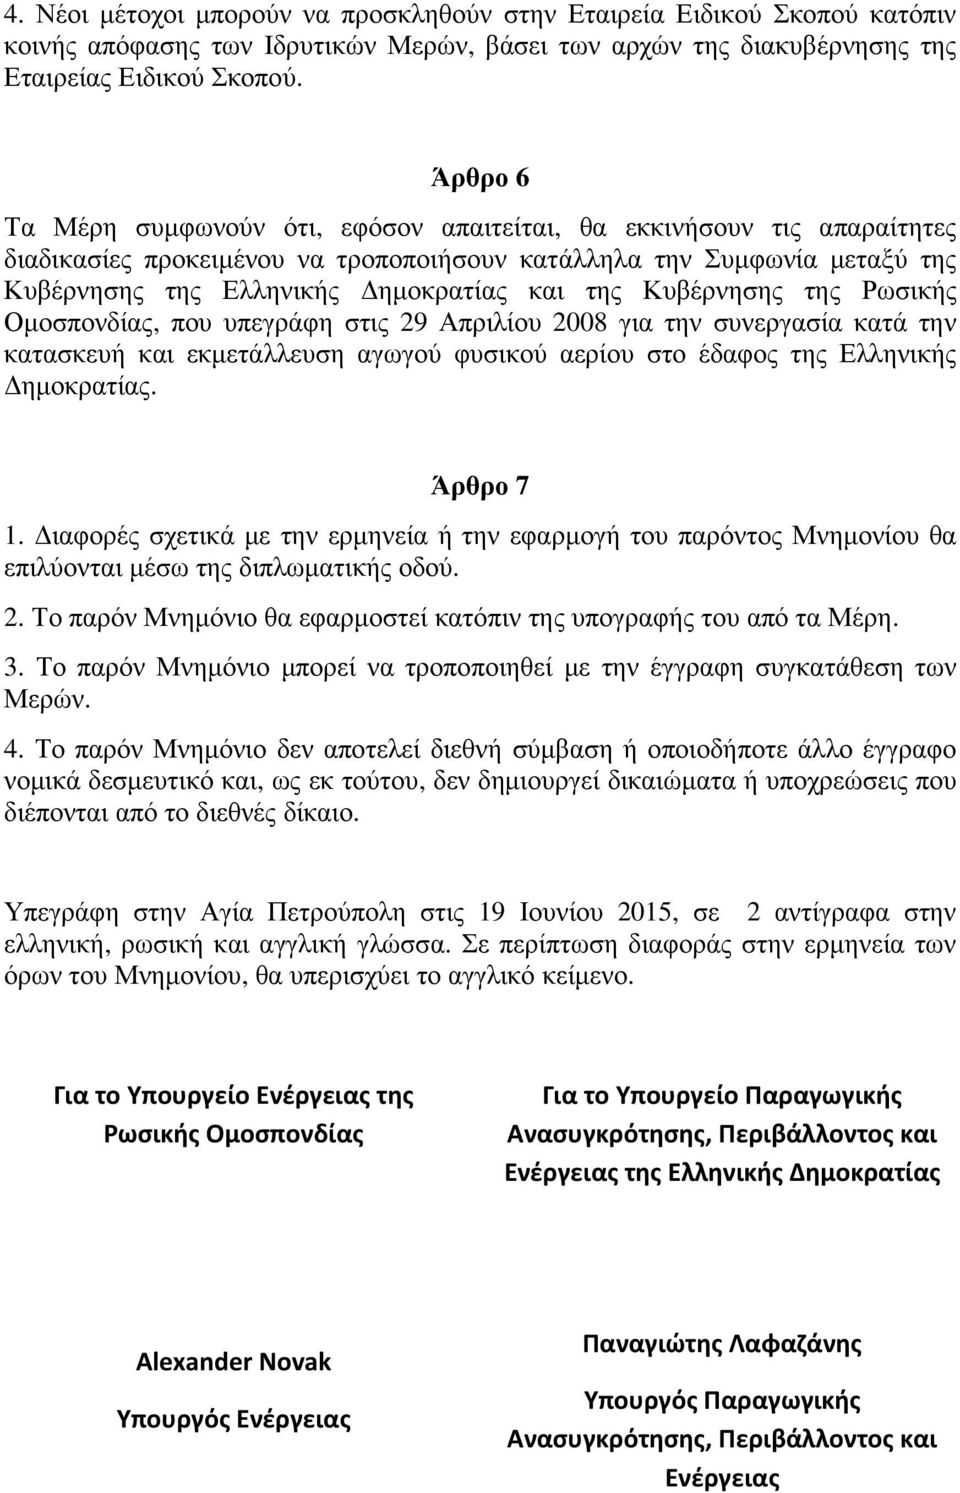 Κυβέρνησης της Ρωσικής Οµοσπονδίας, που υπεγράφη στις 29 Απριλίου 2008 για την συνεργασία κατά την κατασκευή και εκµετάλλευση αγωγού φυσικού αερίου στο έδαφος της Ελληνικής ηµοκρατίας. Άρθρο 7 1.